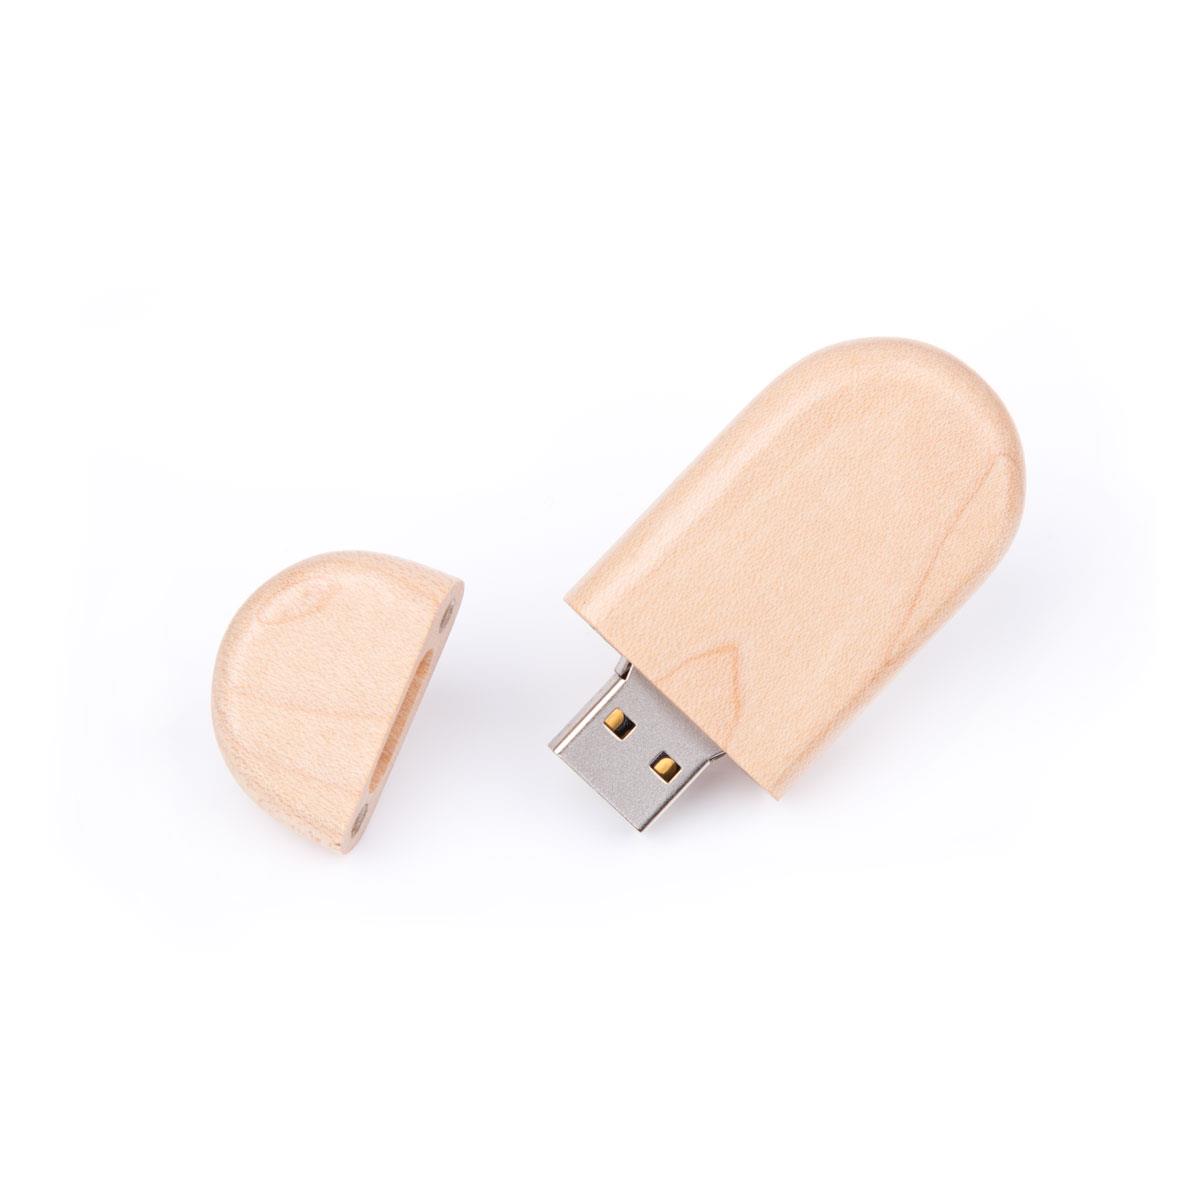 USB Stick Holz Oval 512 MB